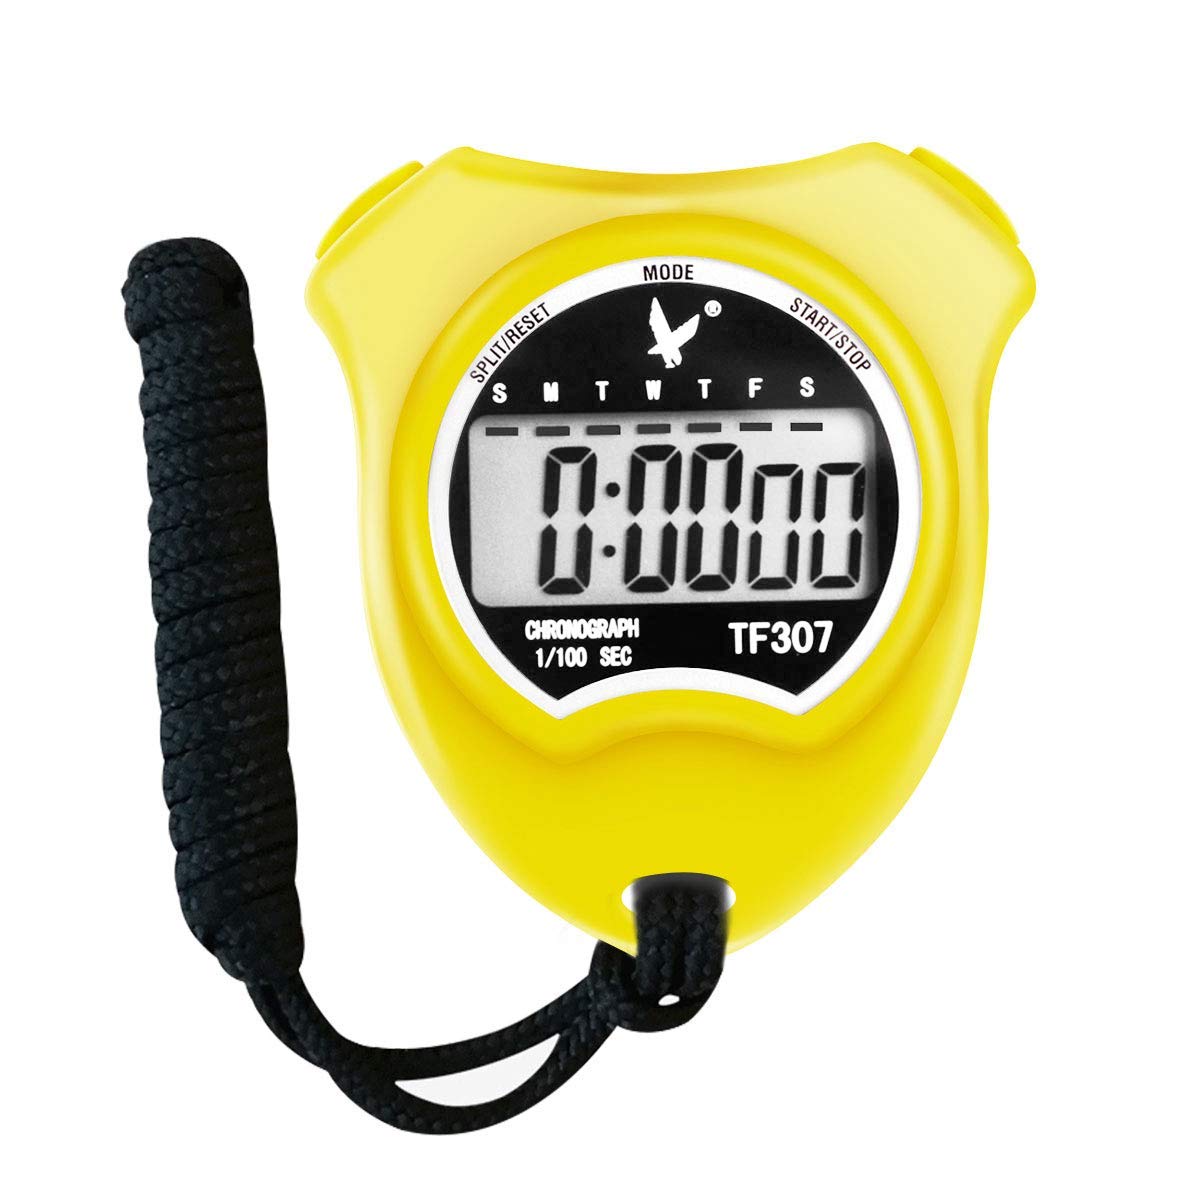 Shunai Professional Stopwatch